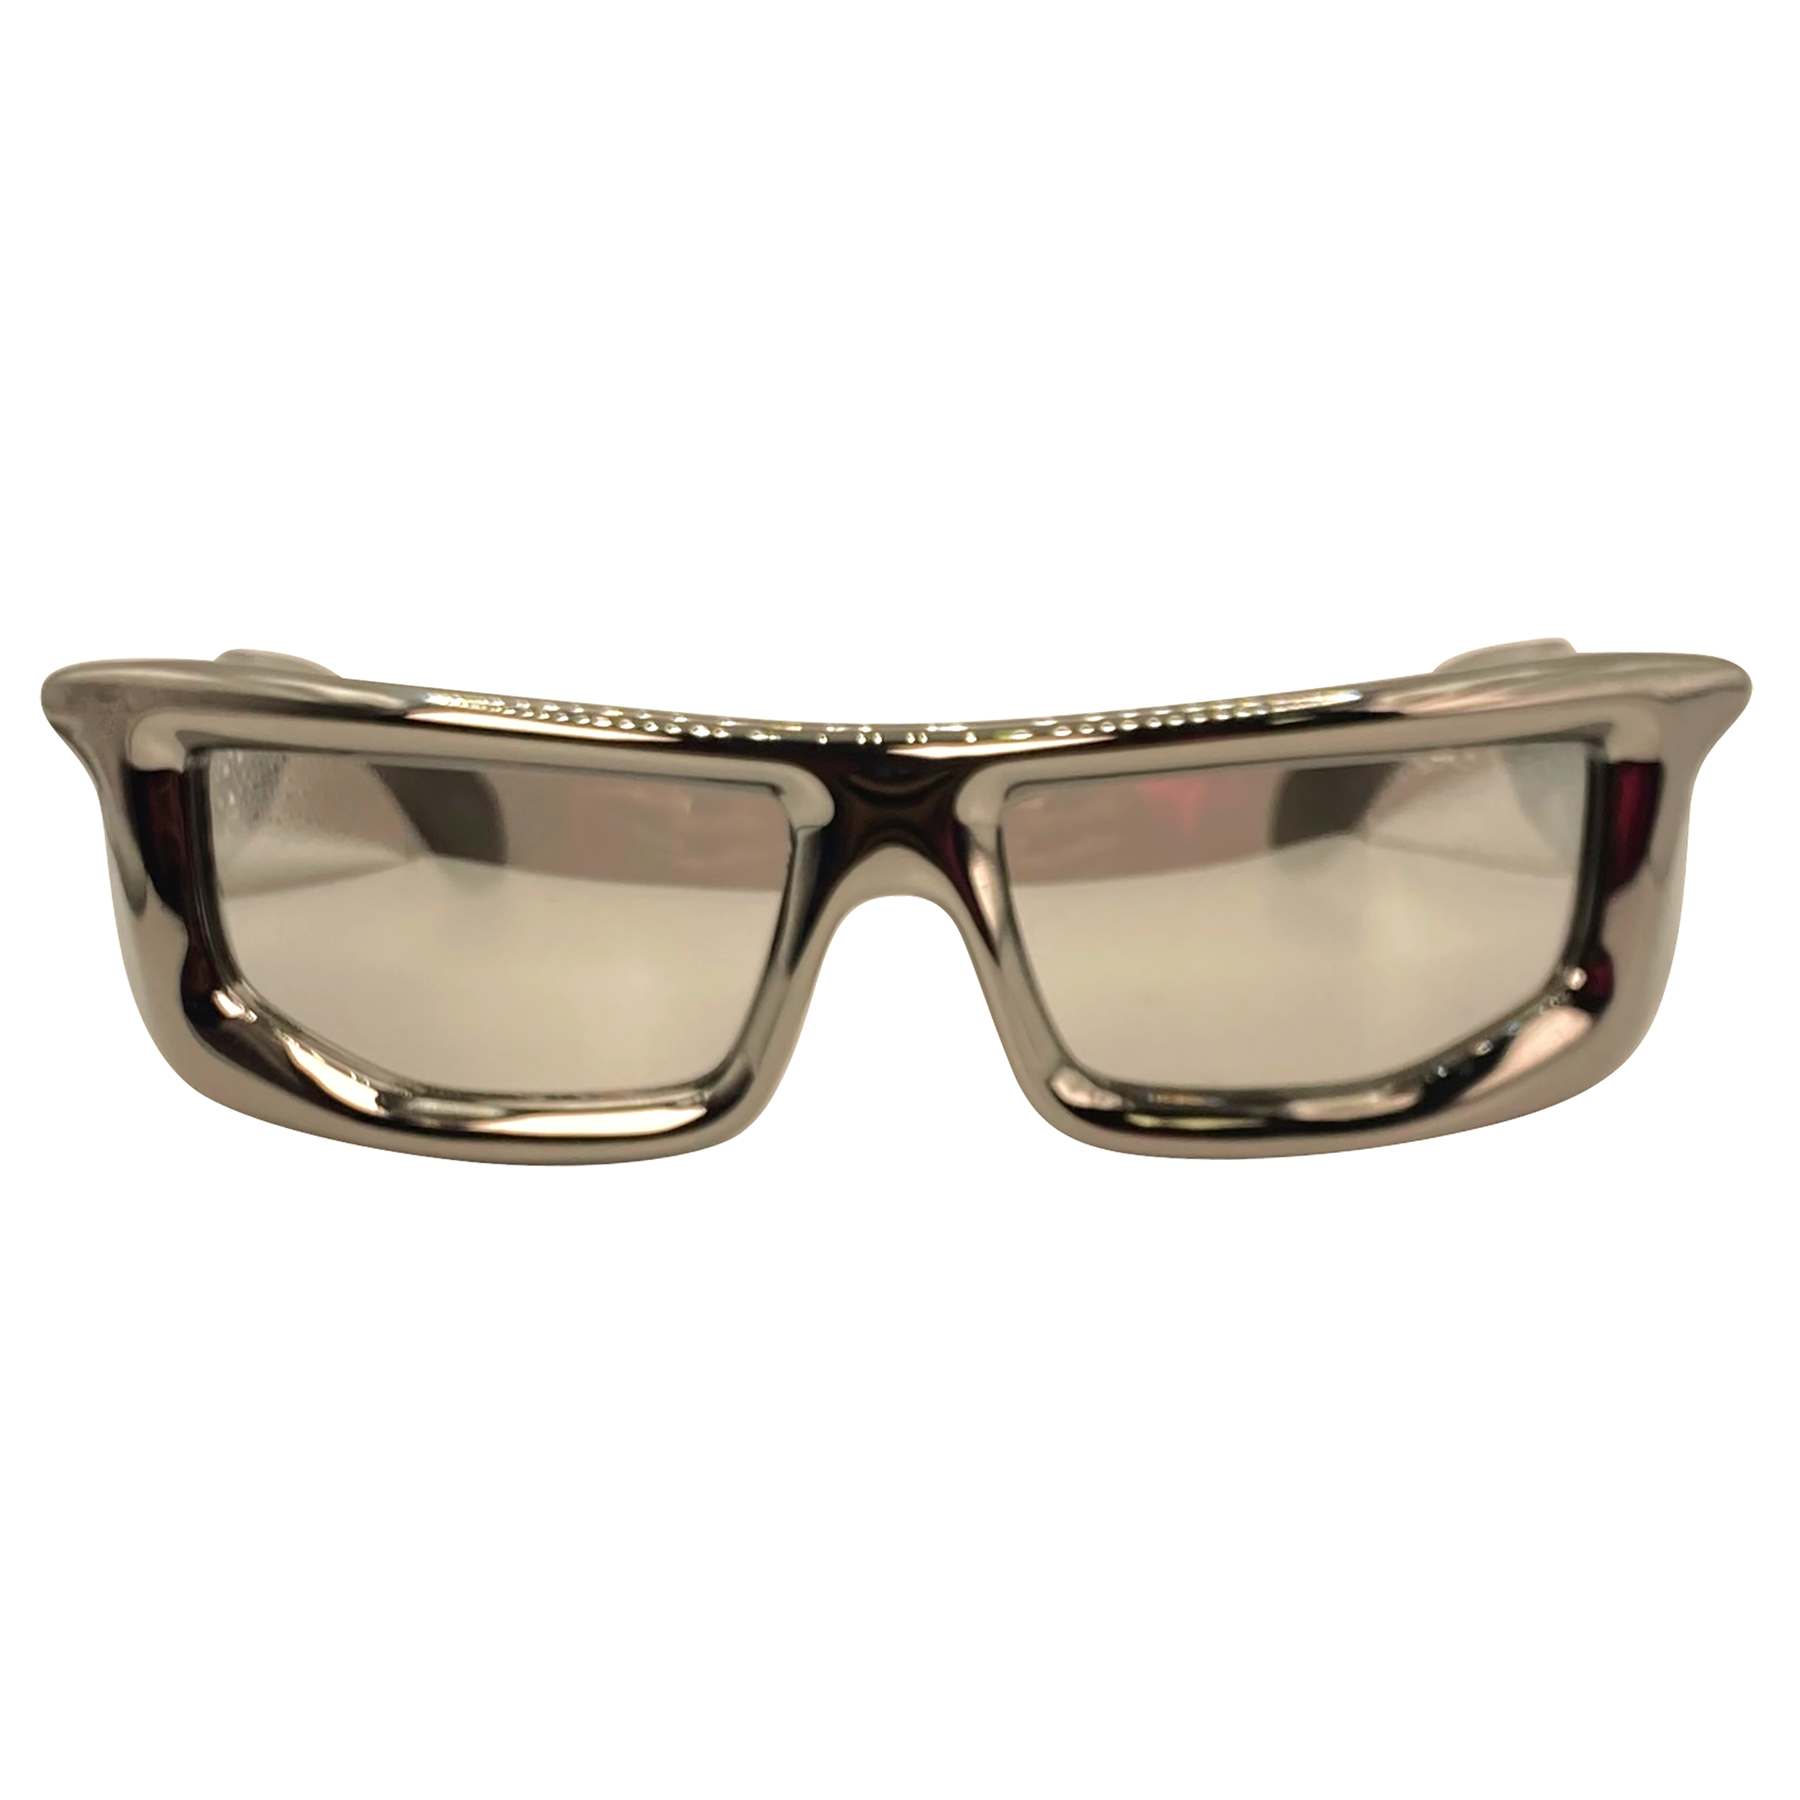 futuristic sunglasses, unique square style frame